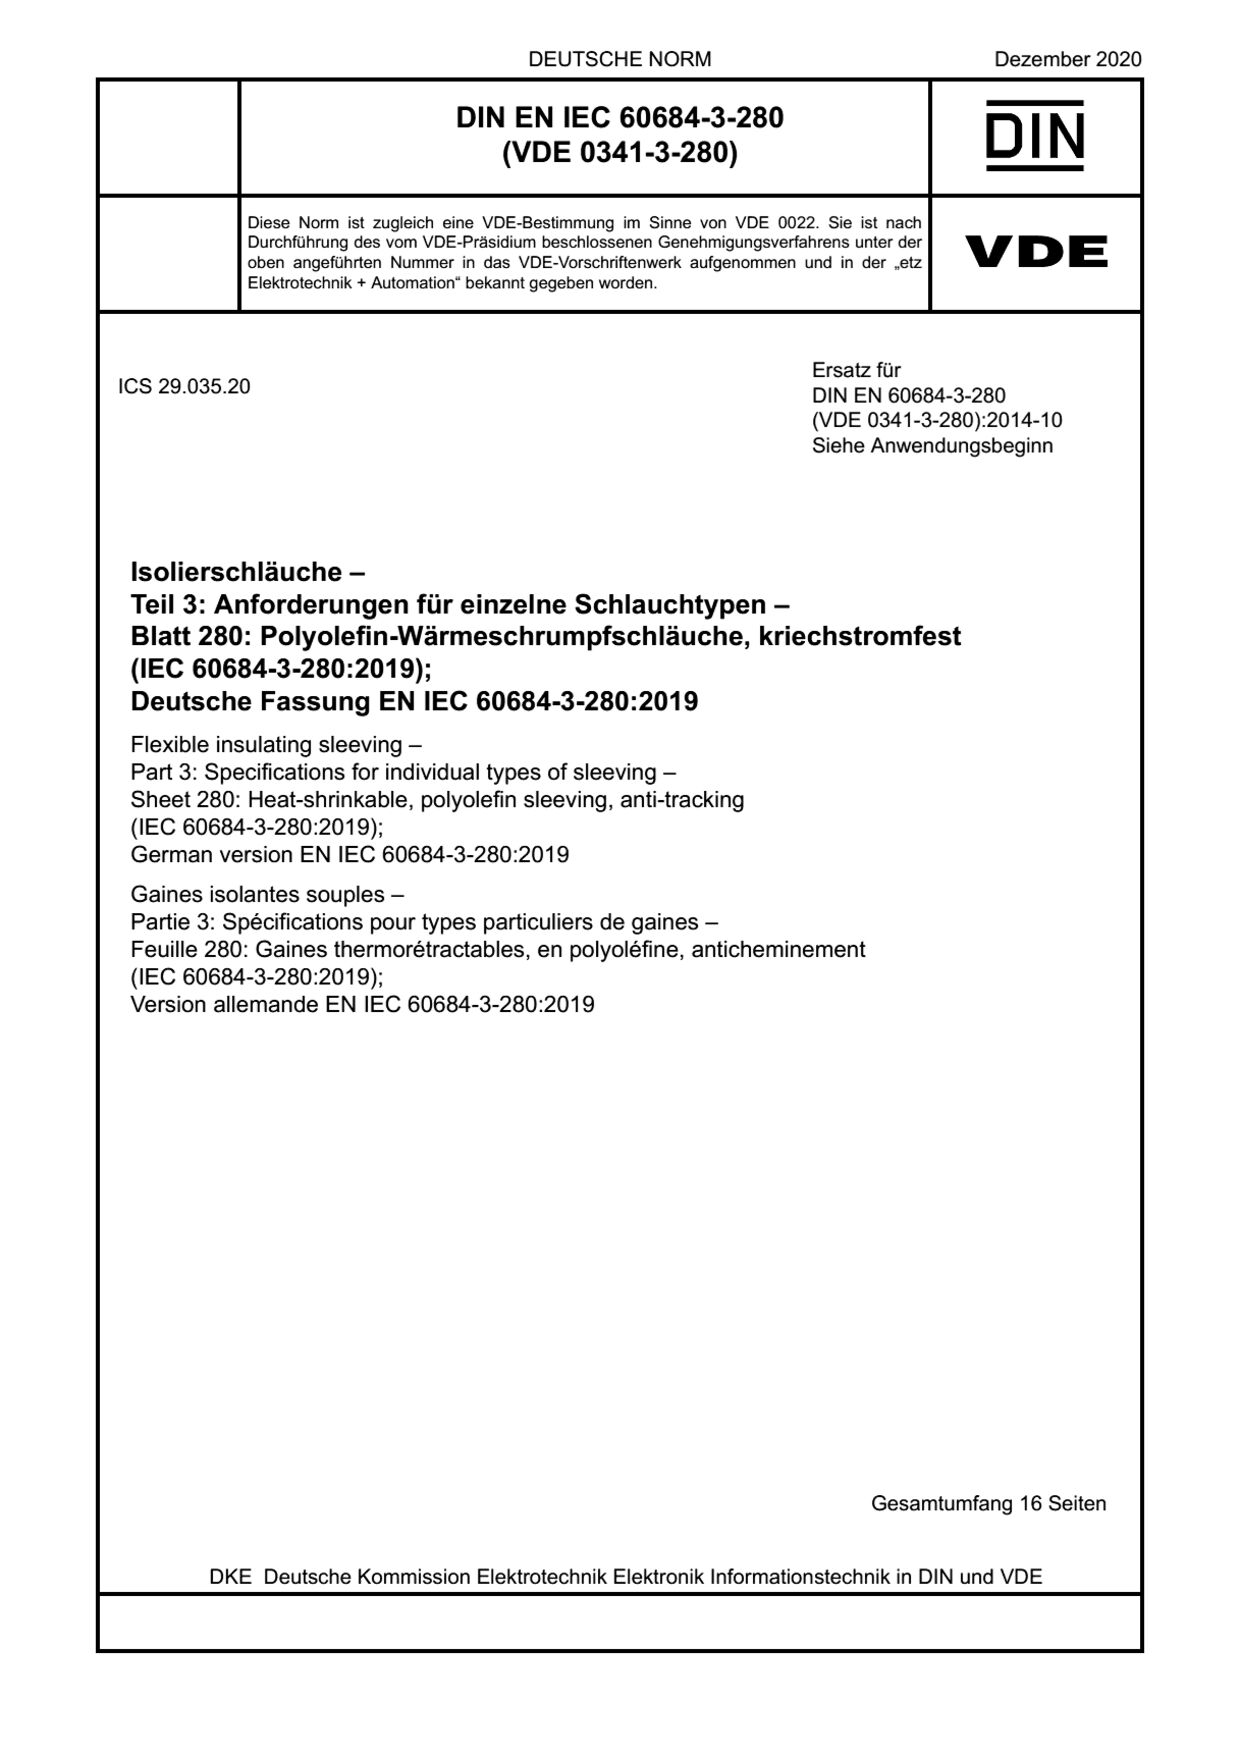 DIN EN IEC 60684-3-280:2020